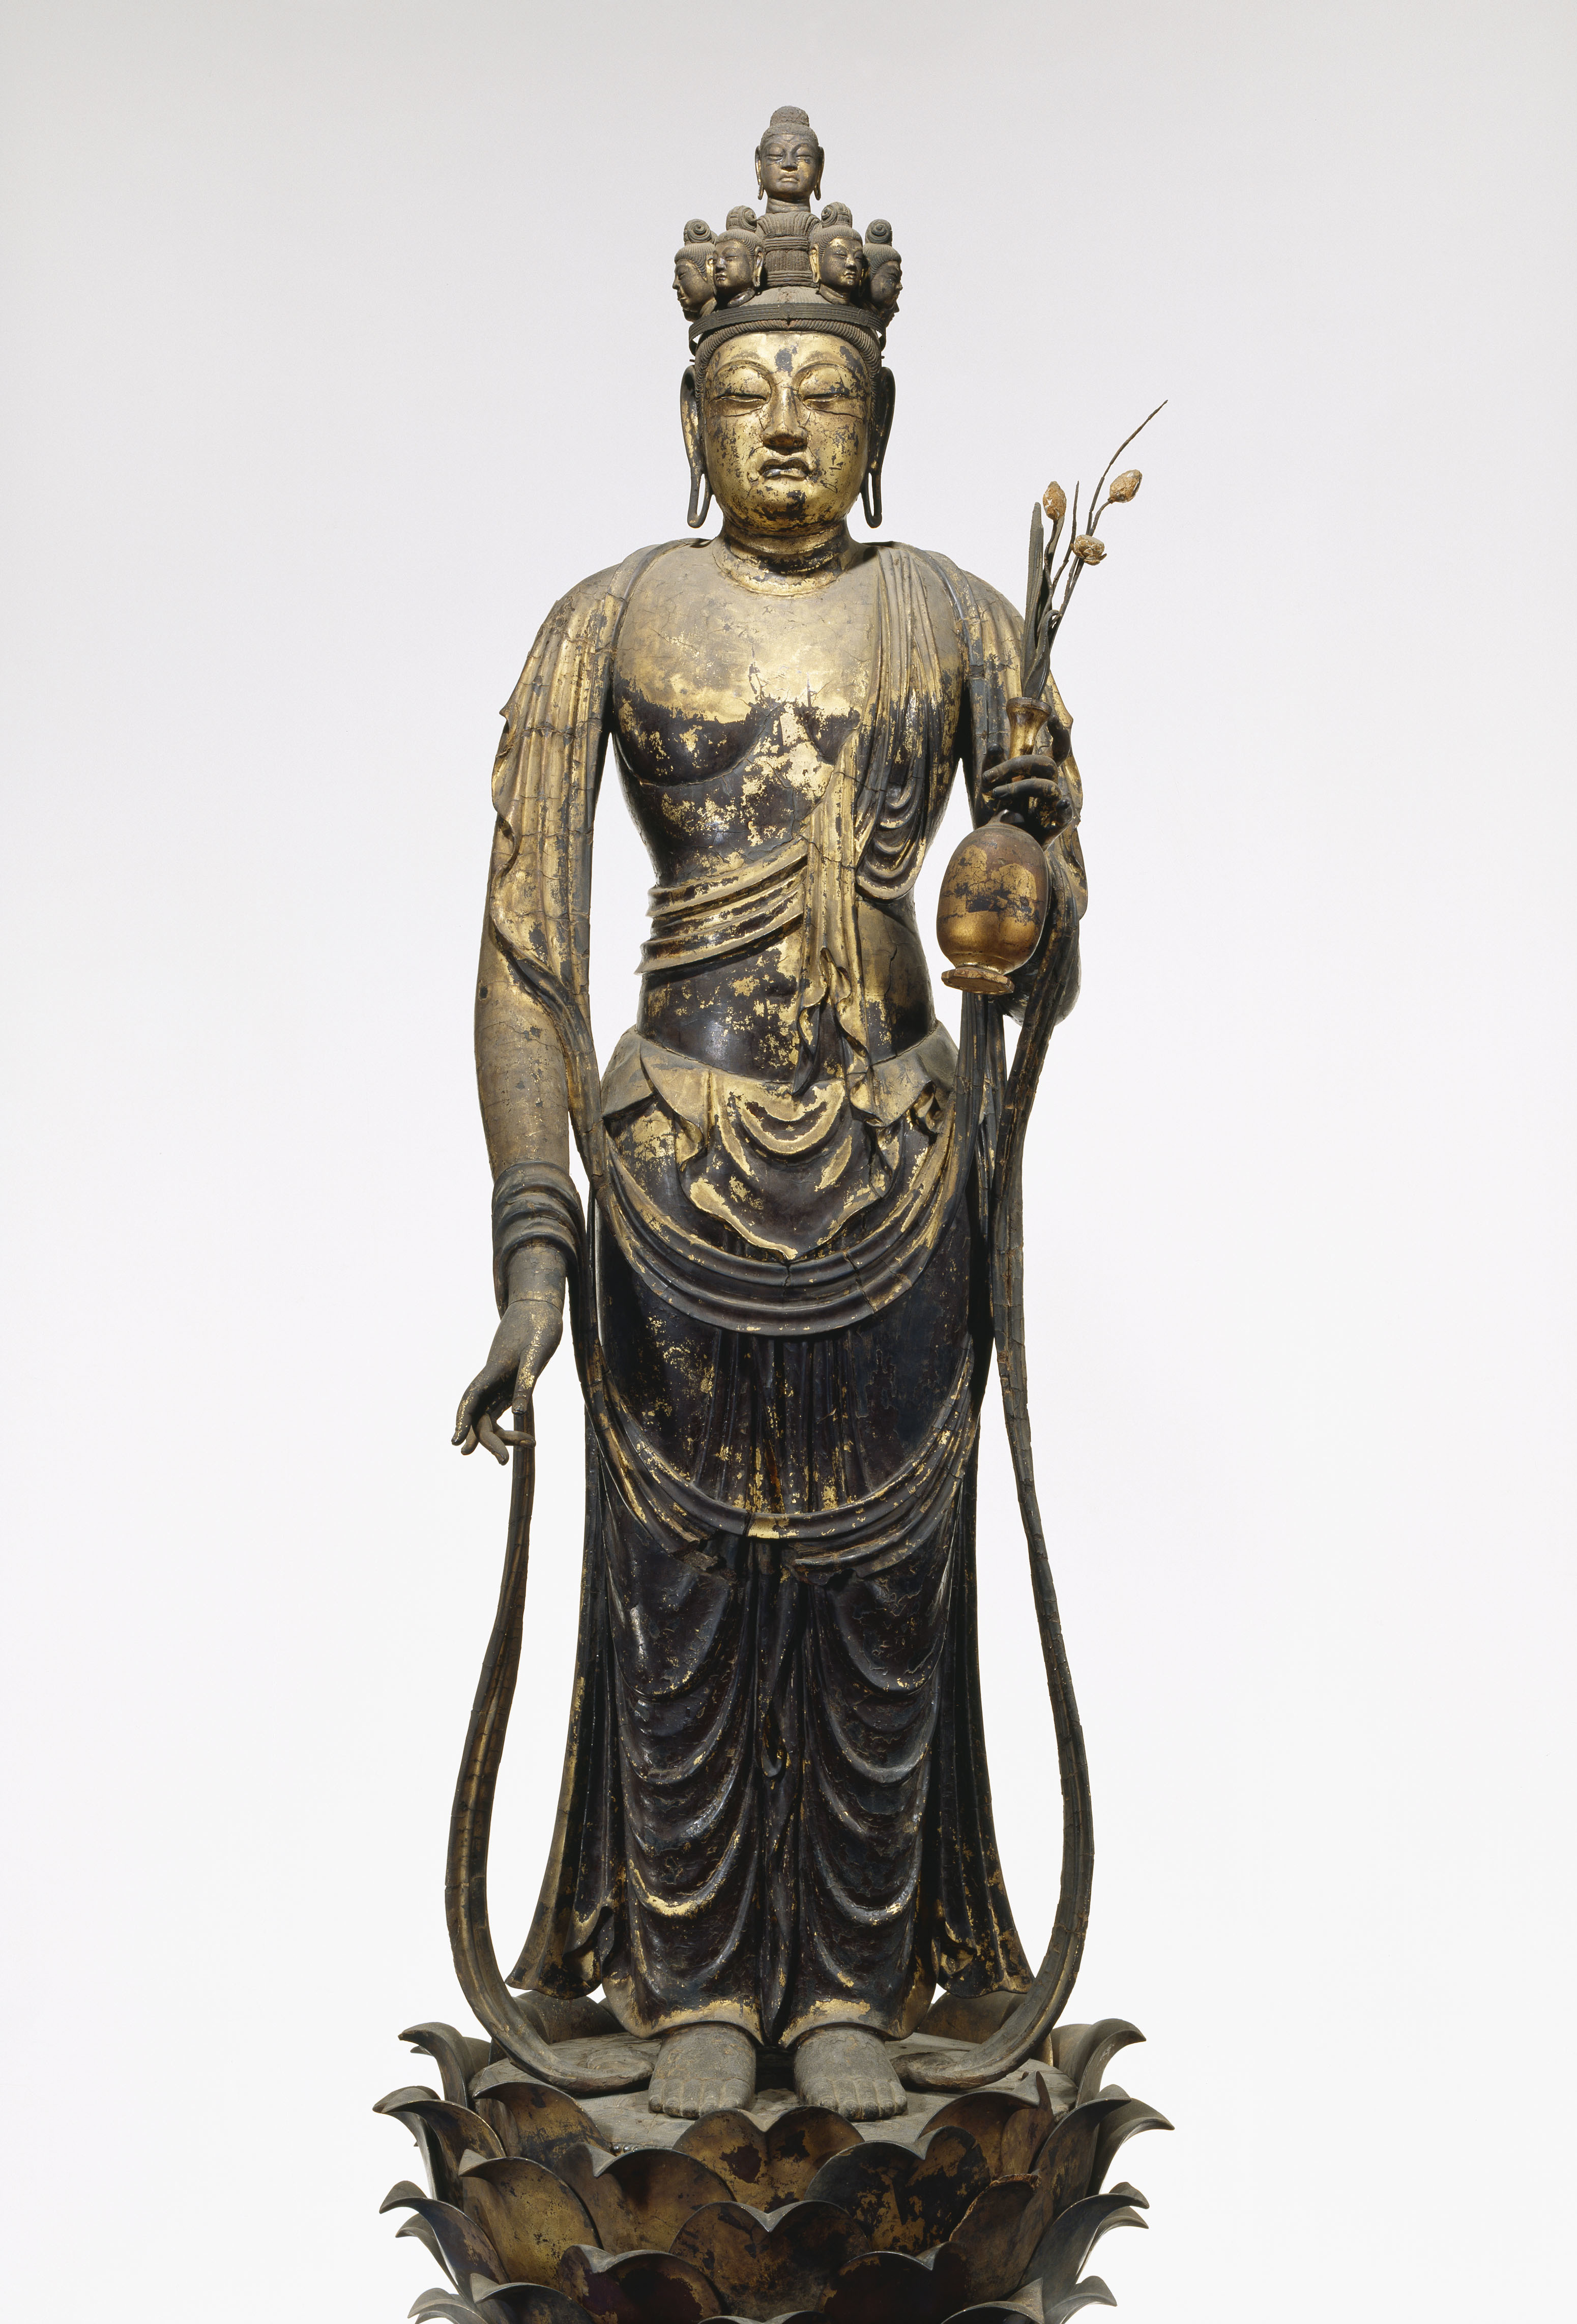 国宝 「十一面観音菩薩立像」 奈良時代・8世紀 奈良・聖林寺蔵